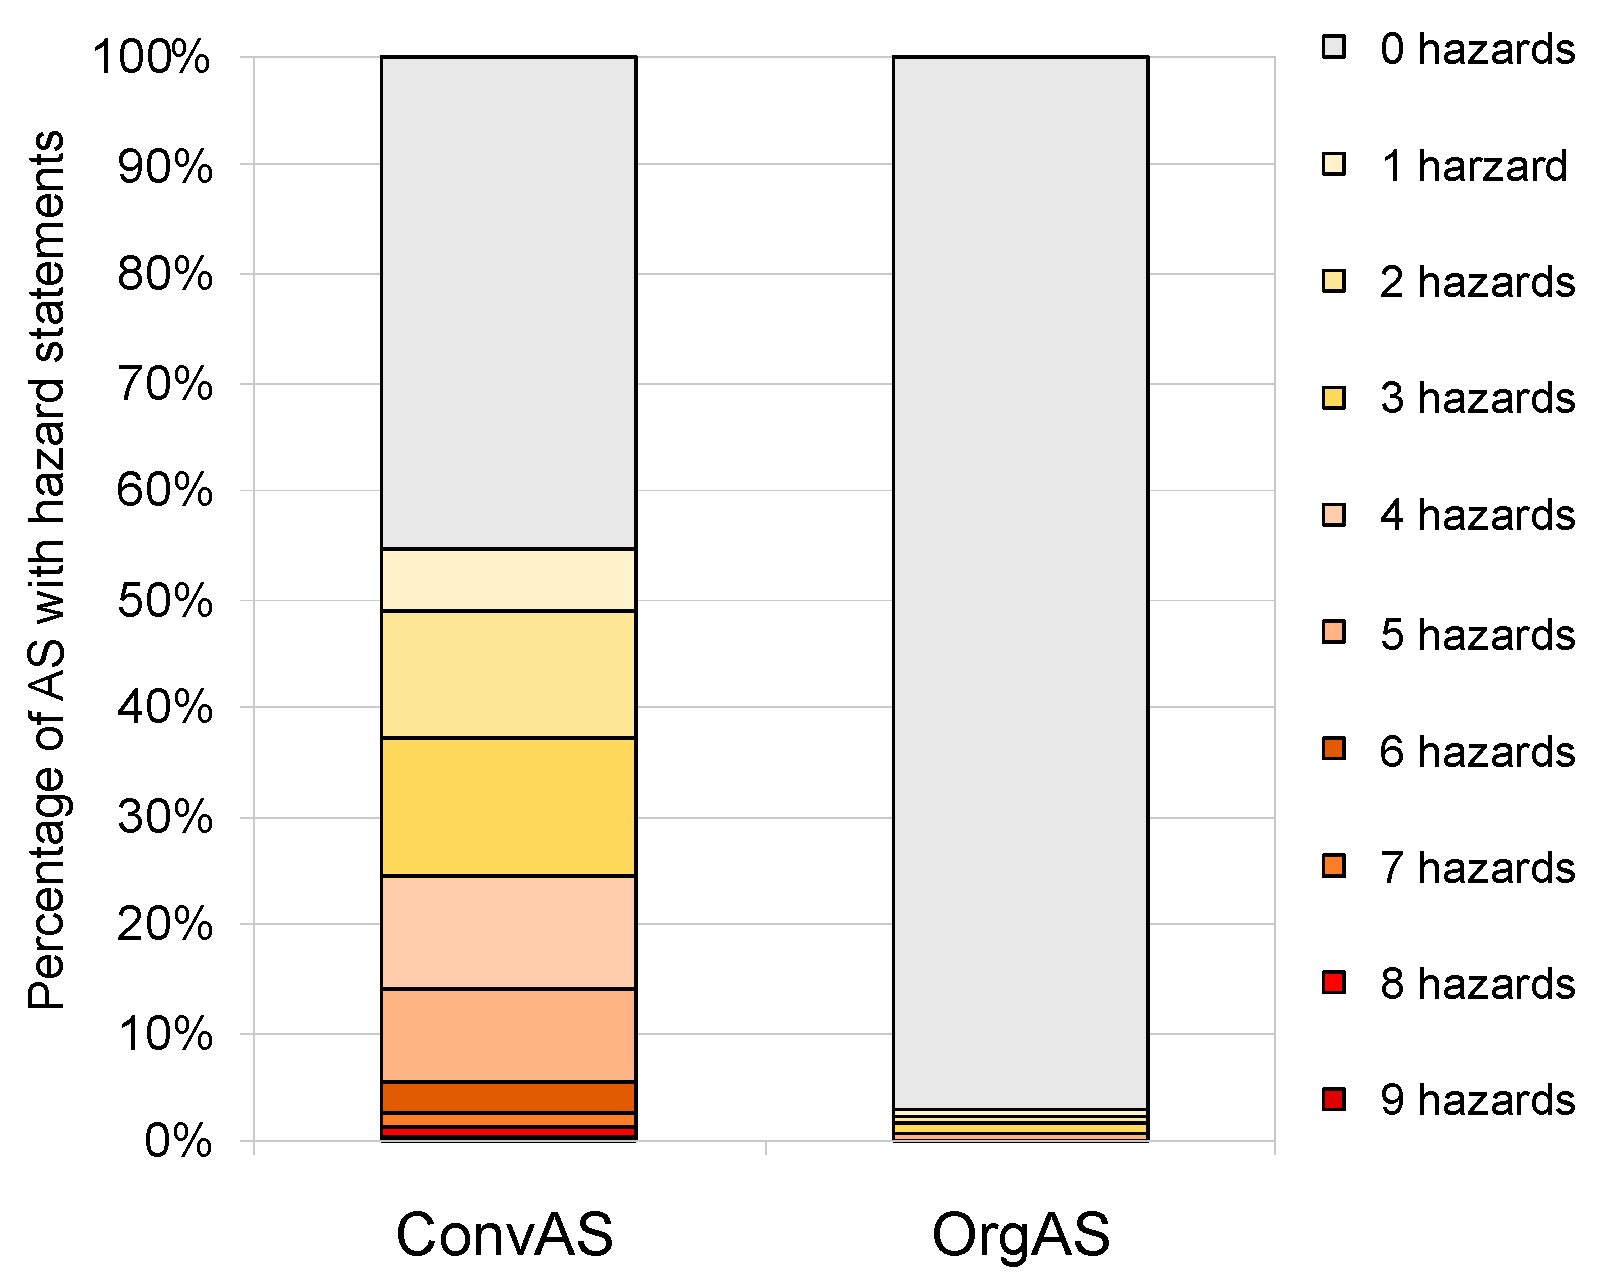 Jämförelse mellan antal faroangivelser per aktiv substans för konventionellt godkända substanser (ConvAS) och ekologiskt godkända (OrgAS). De substanser med flest faroangivelser för konventionellt hade nio varningar och för ekologiskt fem varningar